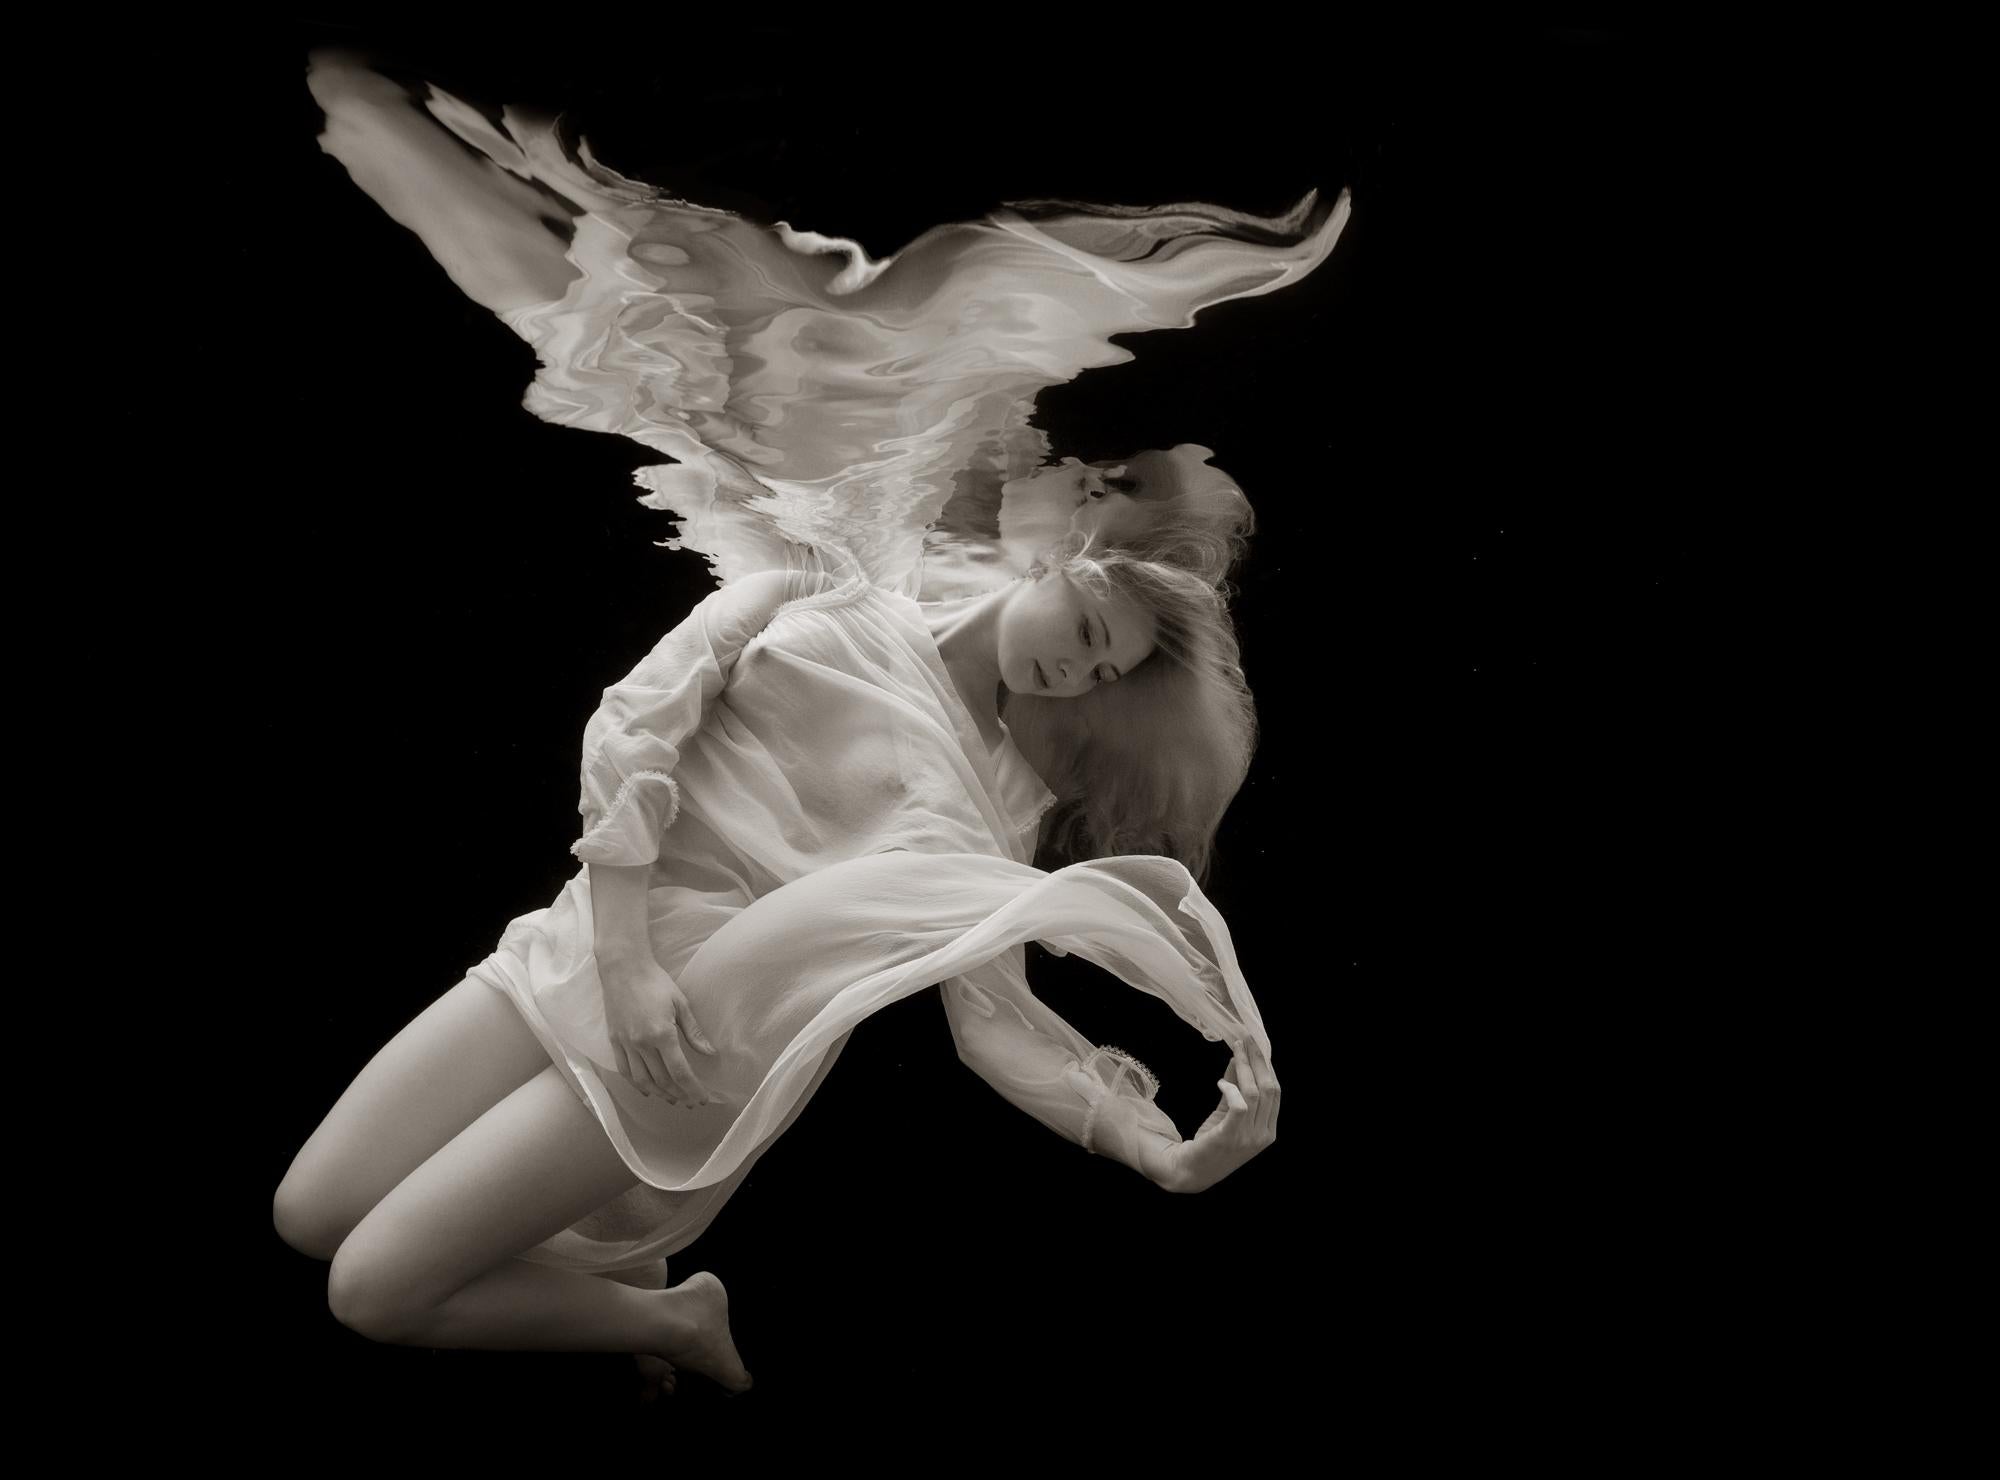 Nude Photograph Alex Sher - Mermaid Angel - photographie sous-marine - impression sur papier 26" x 35" 